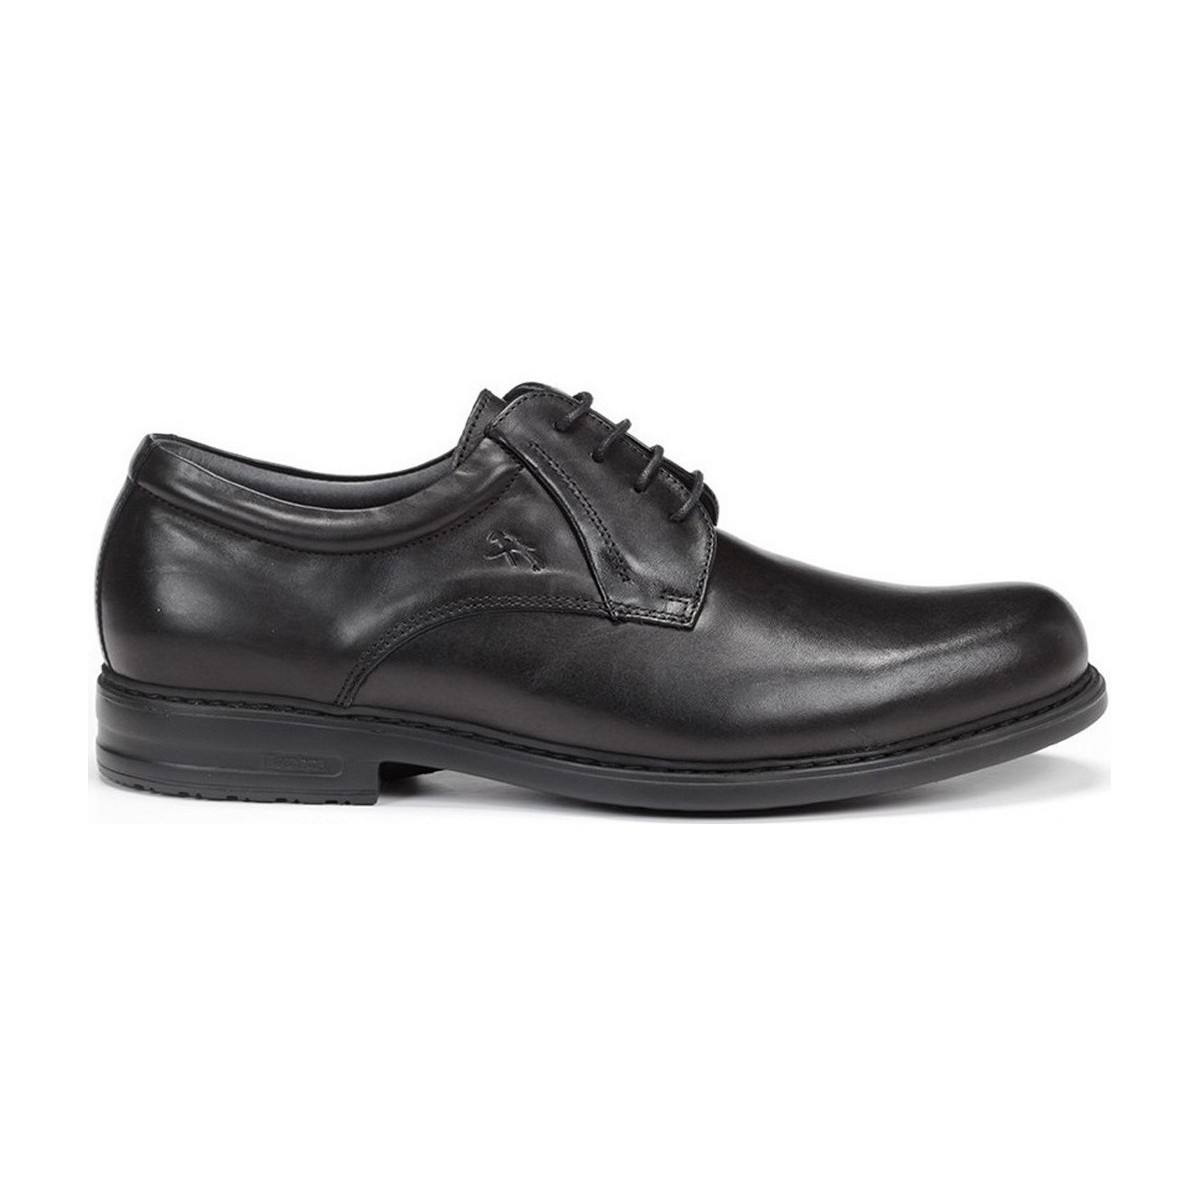 Chaussures Homme Derbies & Richelieu Fluchos 8466 NATUREL SIMON Noir